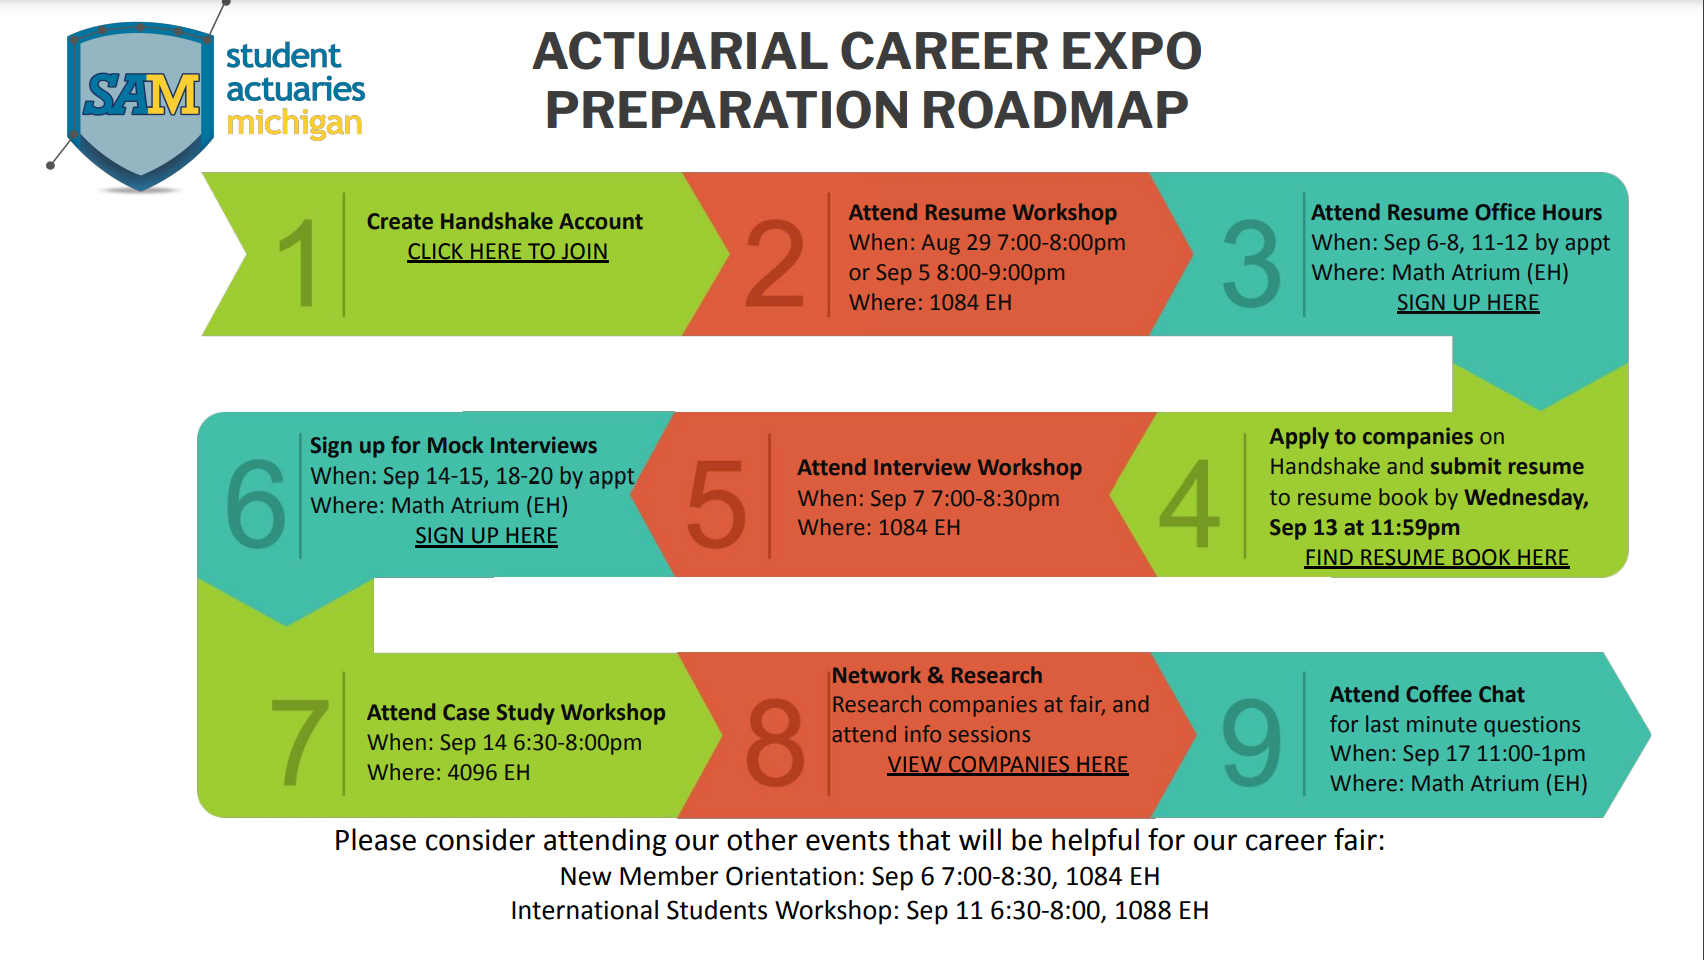 Career Expo Preparation Roadmap